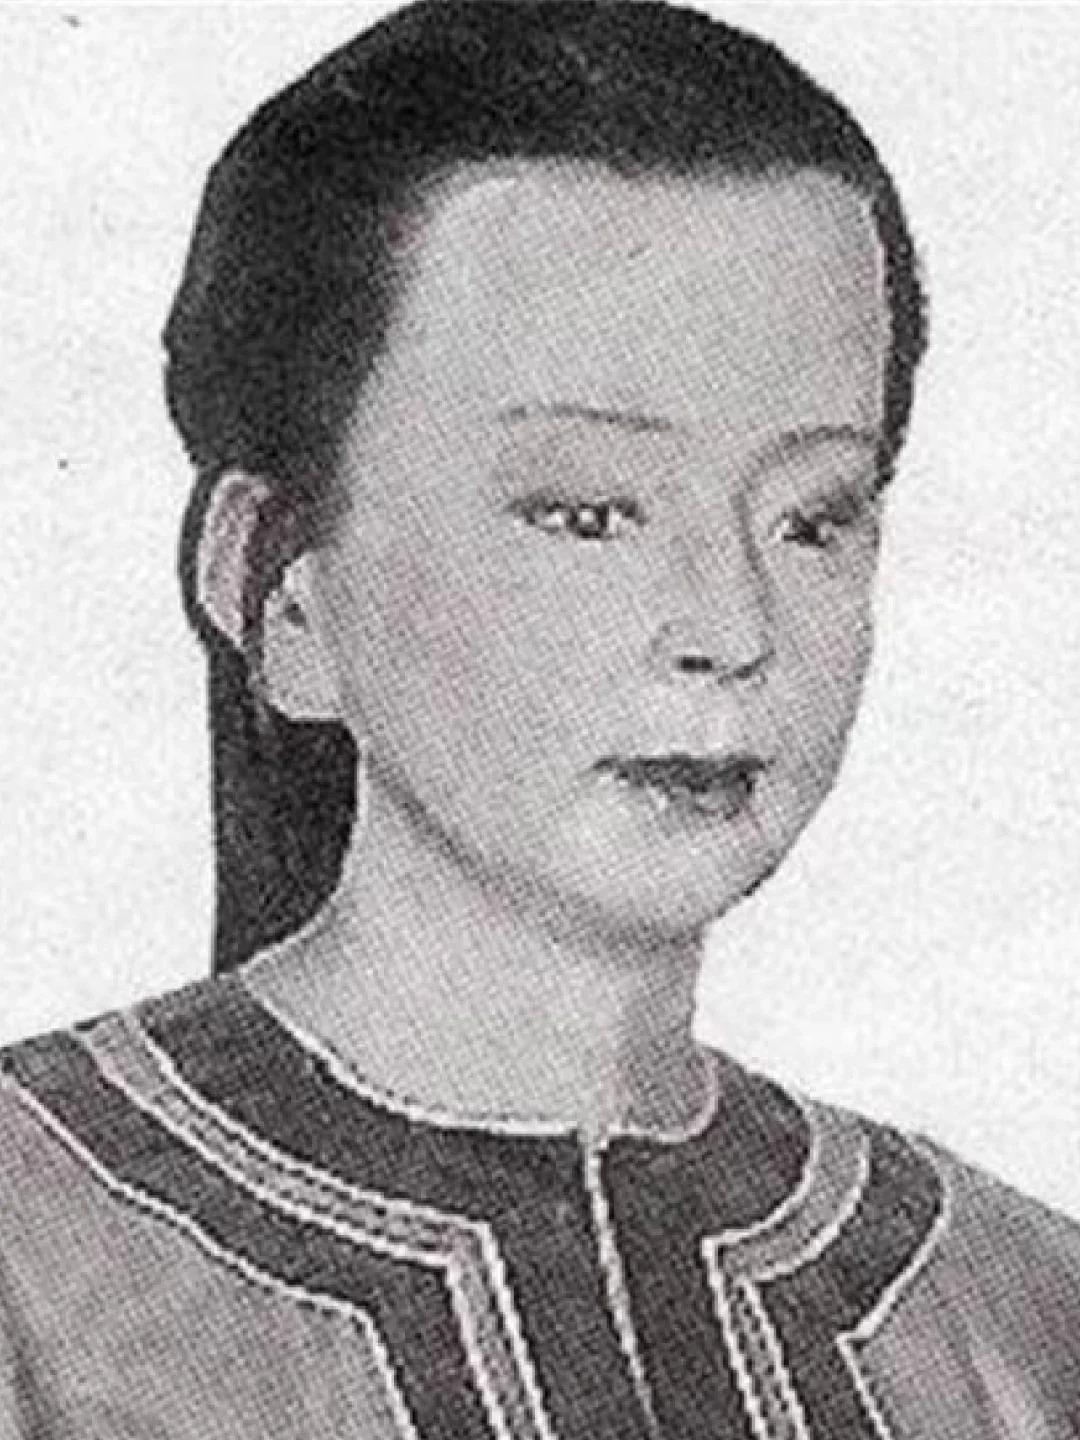 中国历史上11位女中豪杰,女人中的扛把子你知道几个?惊喜在最后